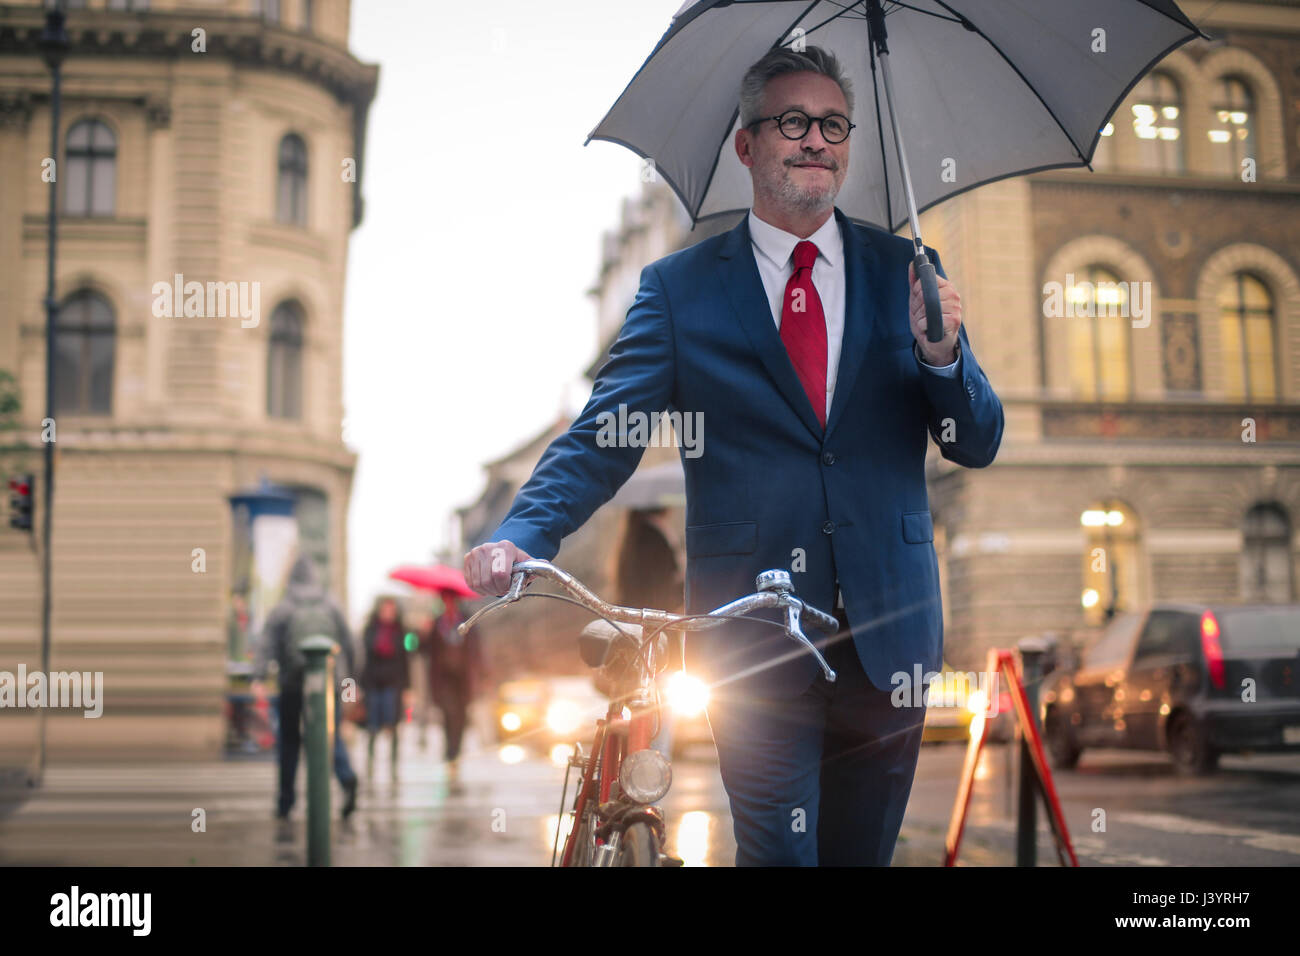 Gut aussehender Mann auf der Straße unter dem Regen. Er hält sein Fahrrad und schützen sich mit einem Regenschirm. Stockfoto